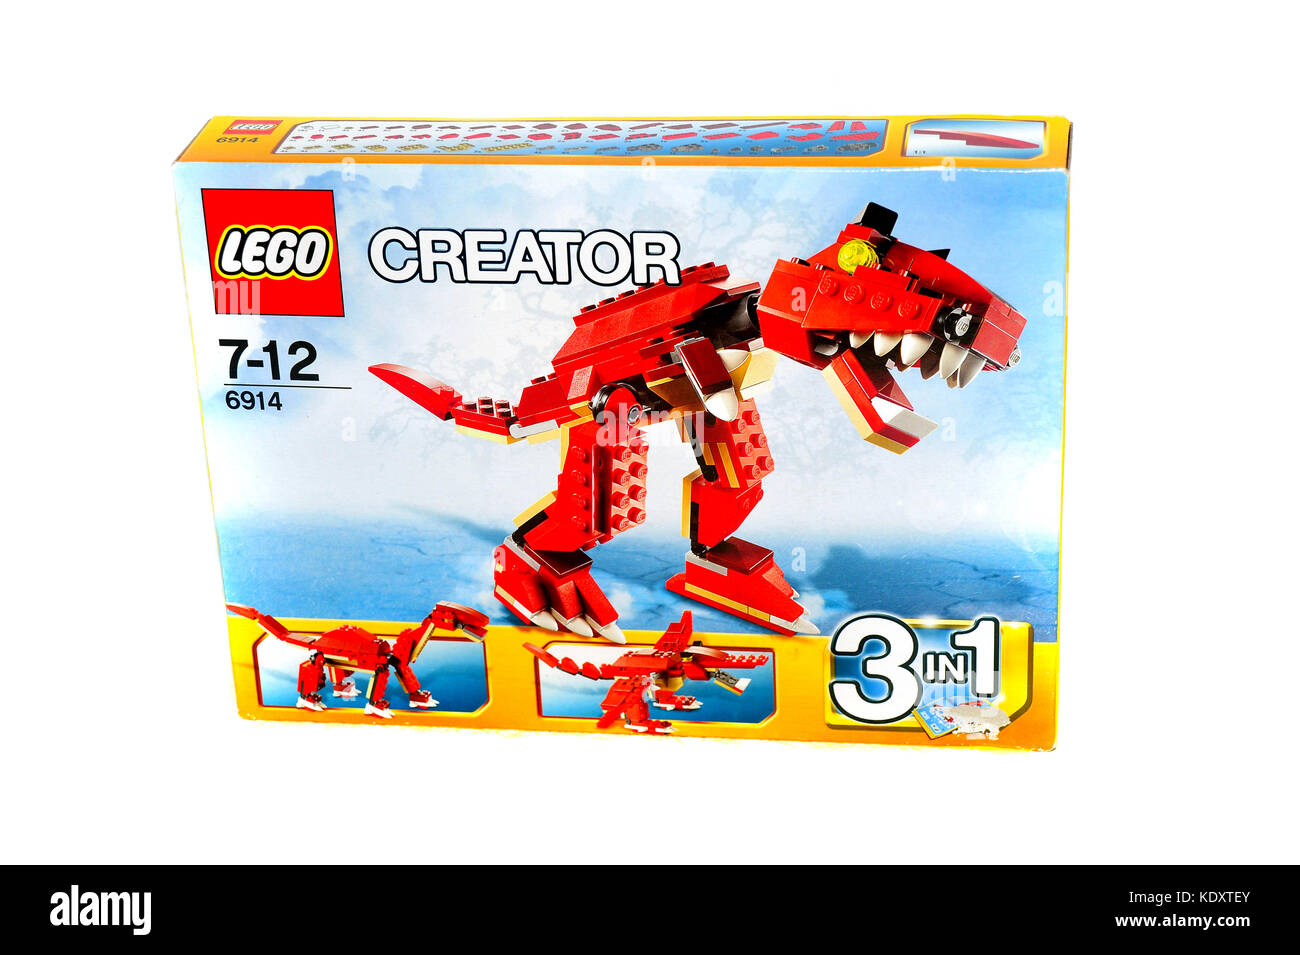 Lego dinosaur immagini e fotografie stock ad alta risoluzione - Alamy